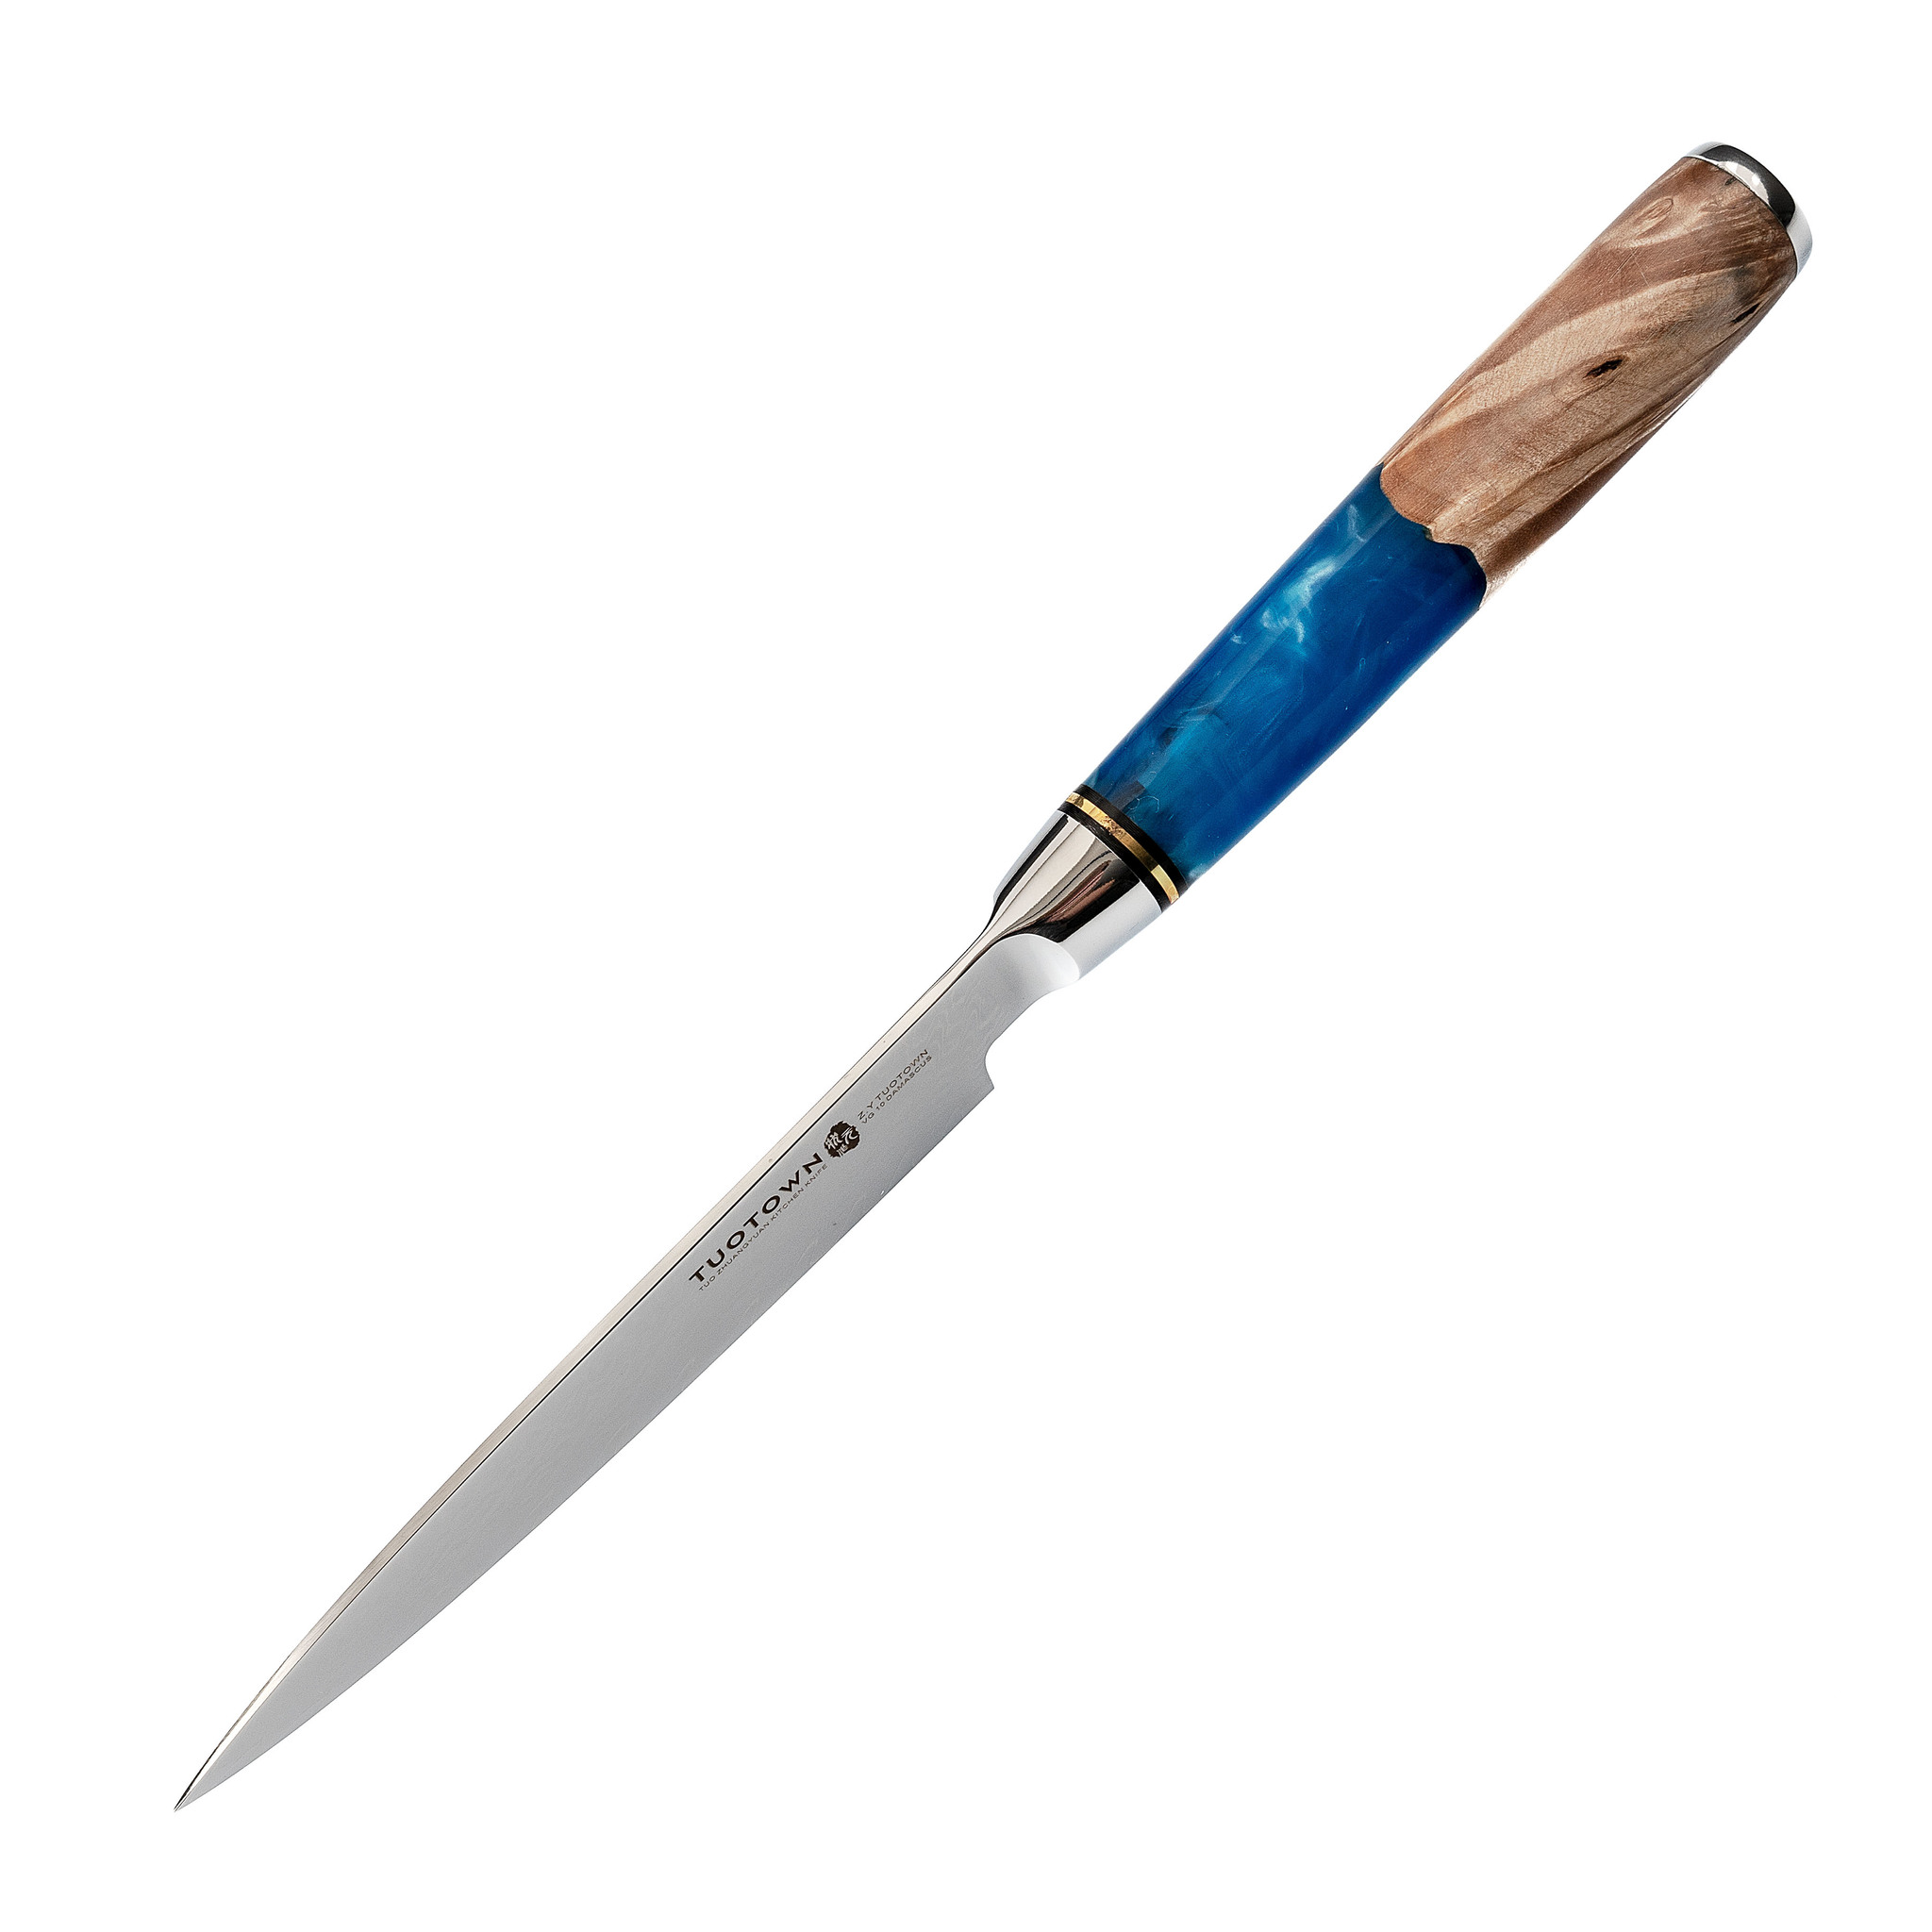 Кухонный универсальный нож Tuotown TWB-D3, сталь VG-10, рукоять дерево/эпоксидка - фото 4